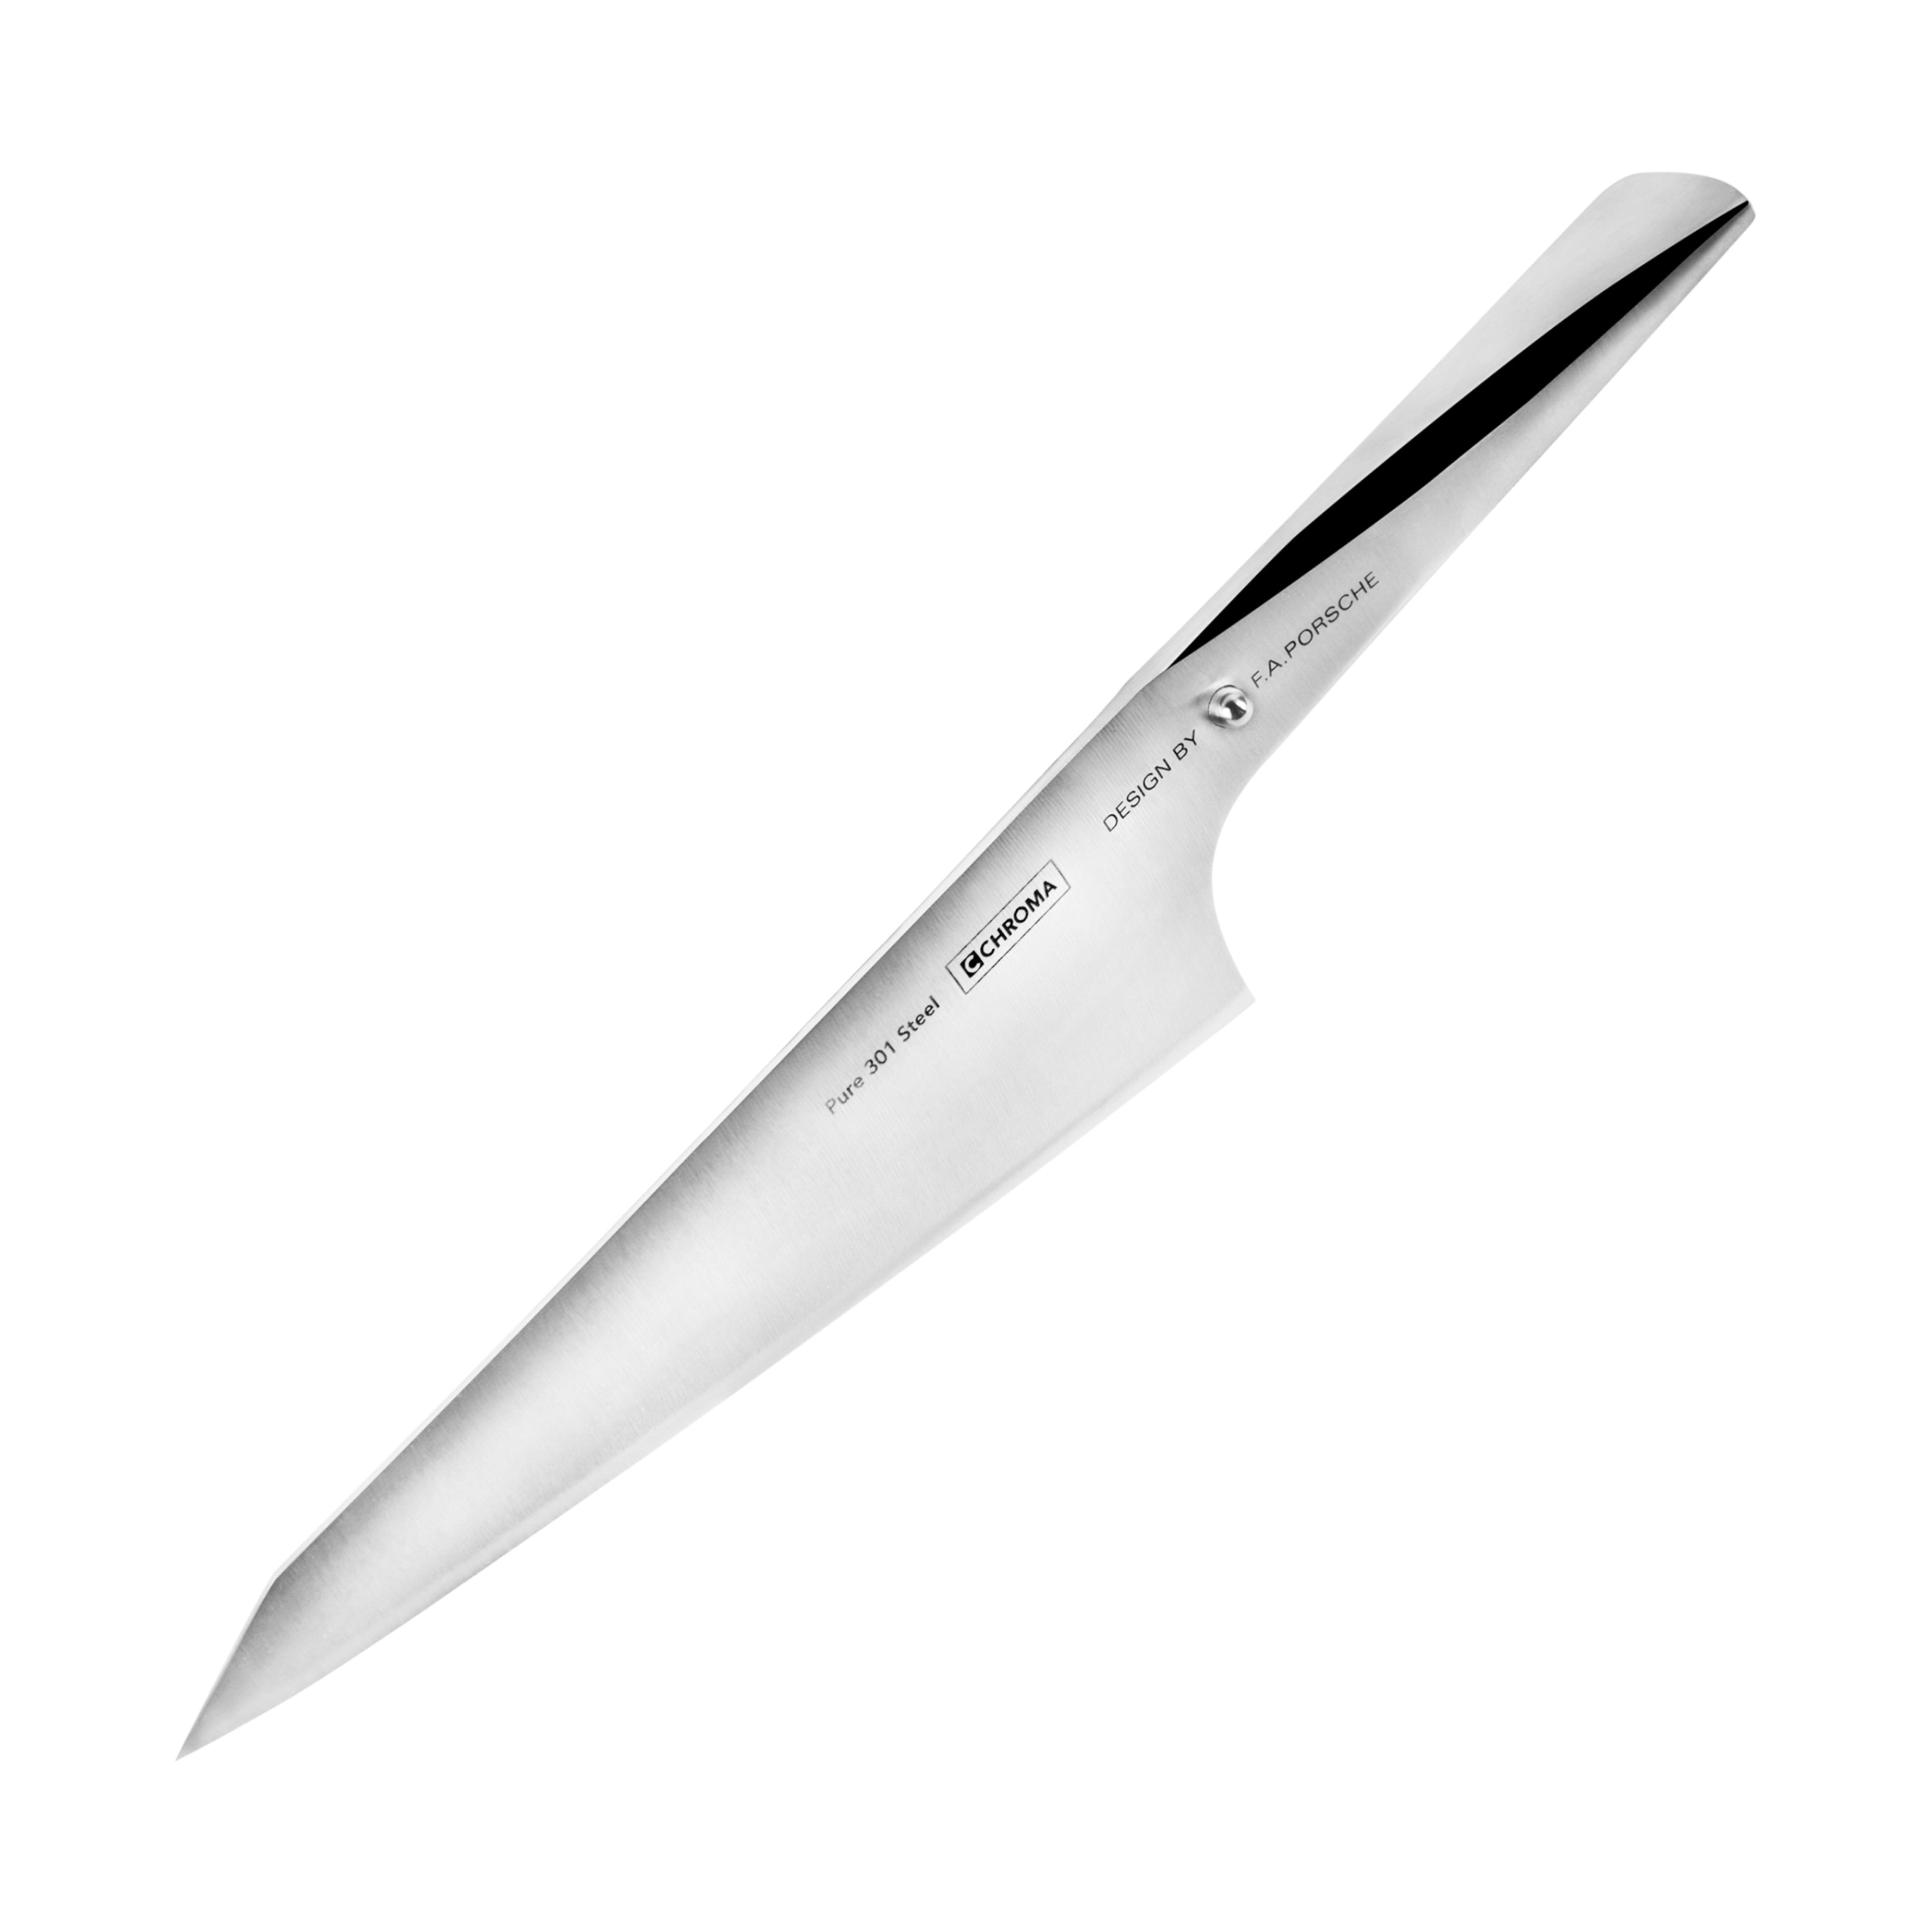 Chroma Type 301: 7 1/2 Katano Knife